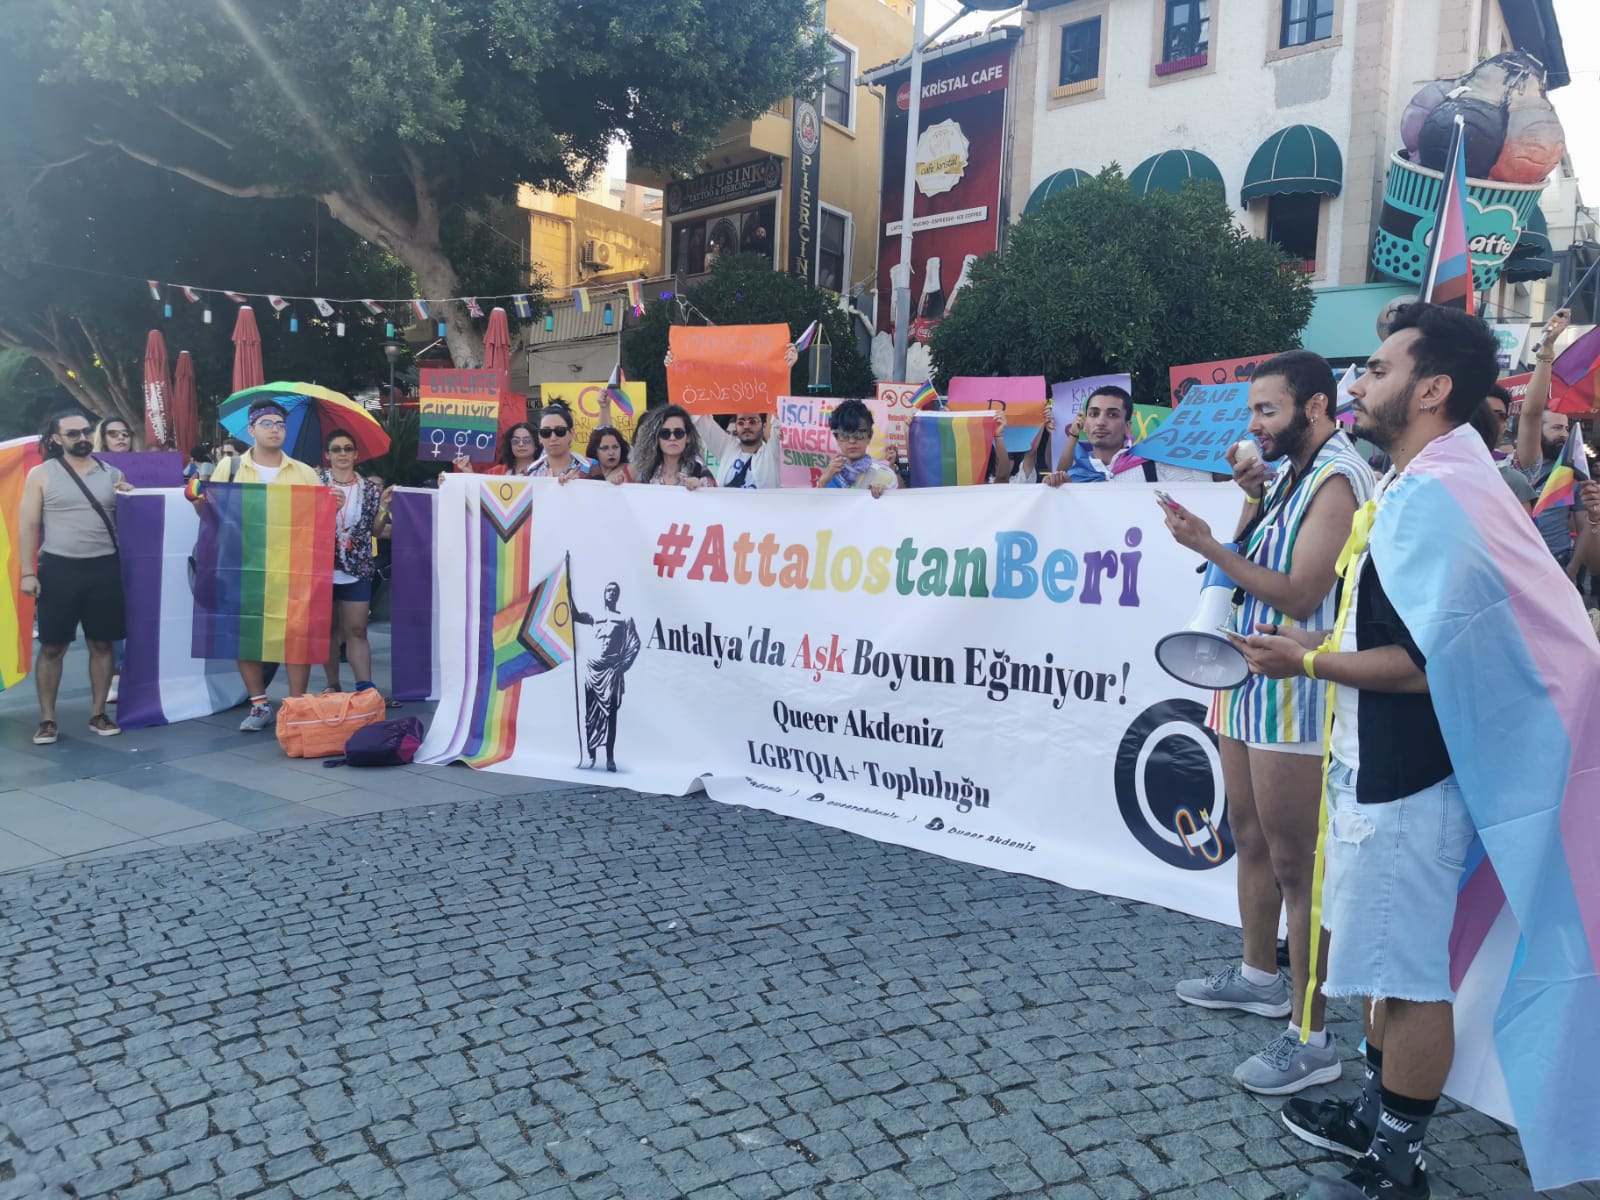 Antalya Onur Yürüyüşü engellemelere rağmen gerçekleşti! Kaos GL - LGBTİ+ Haber Portalı